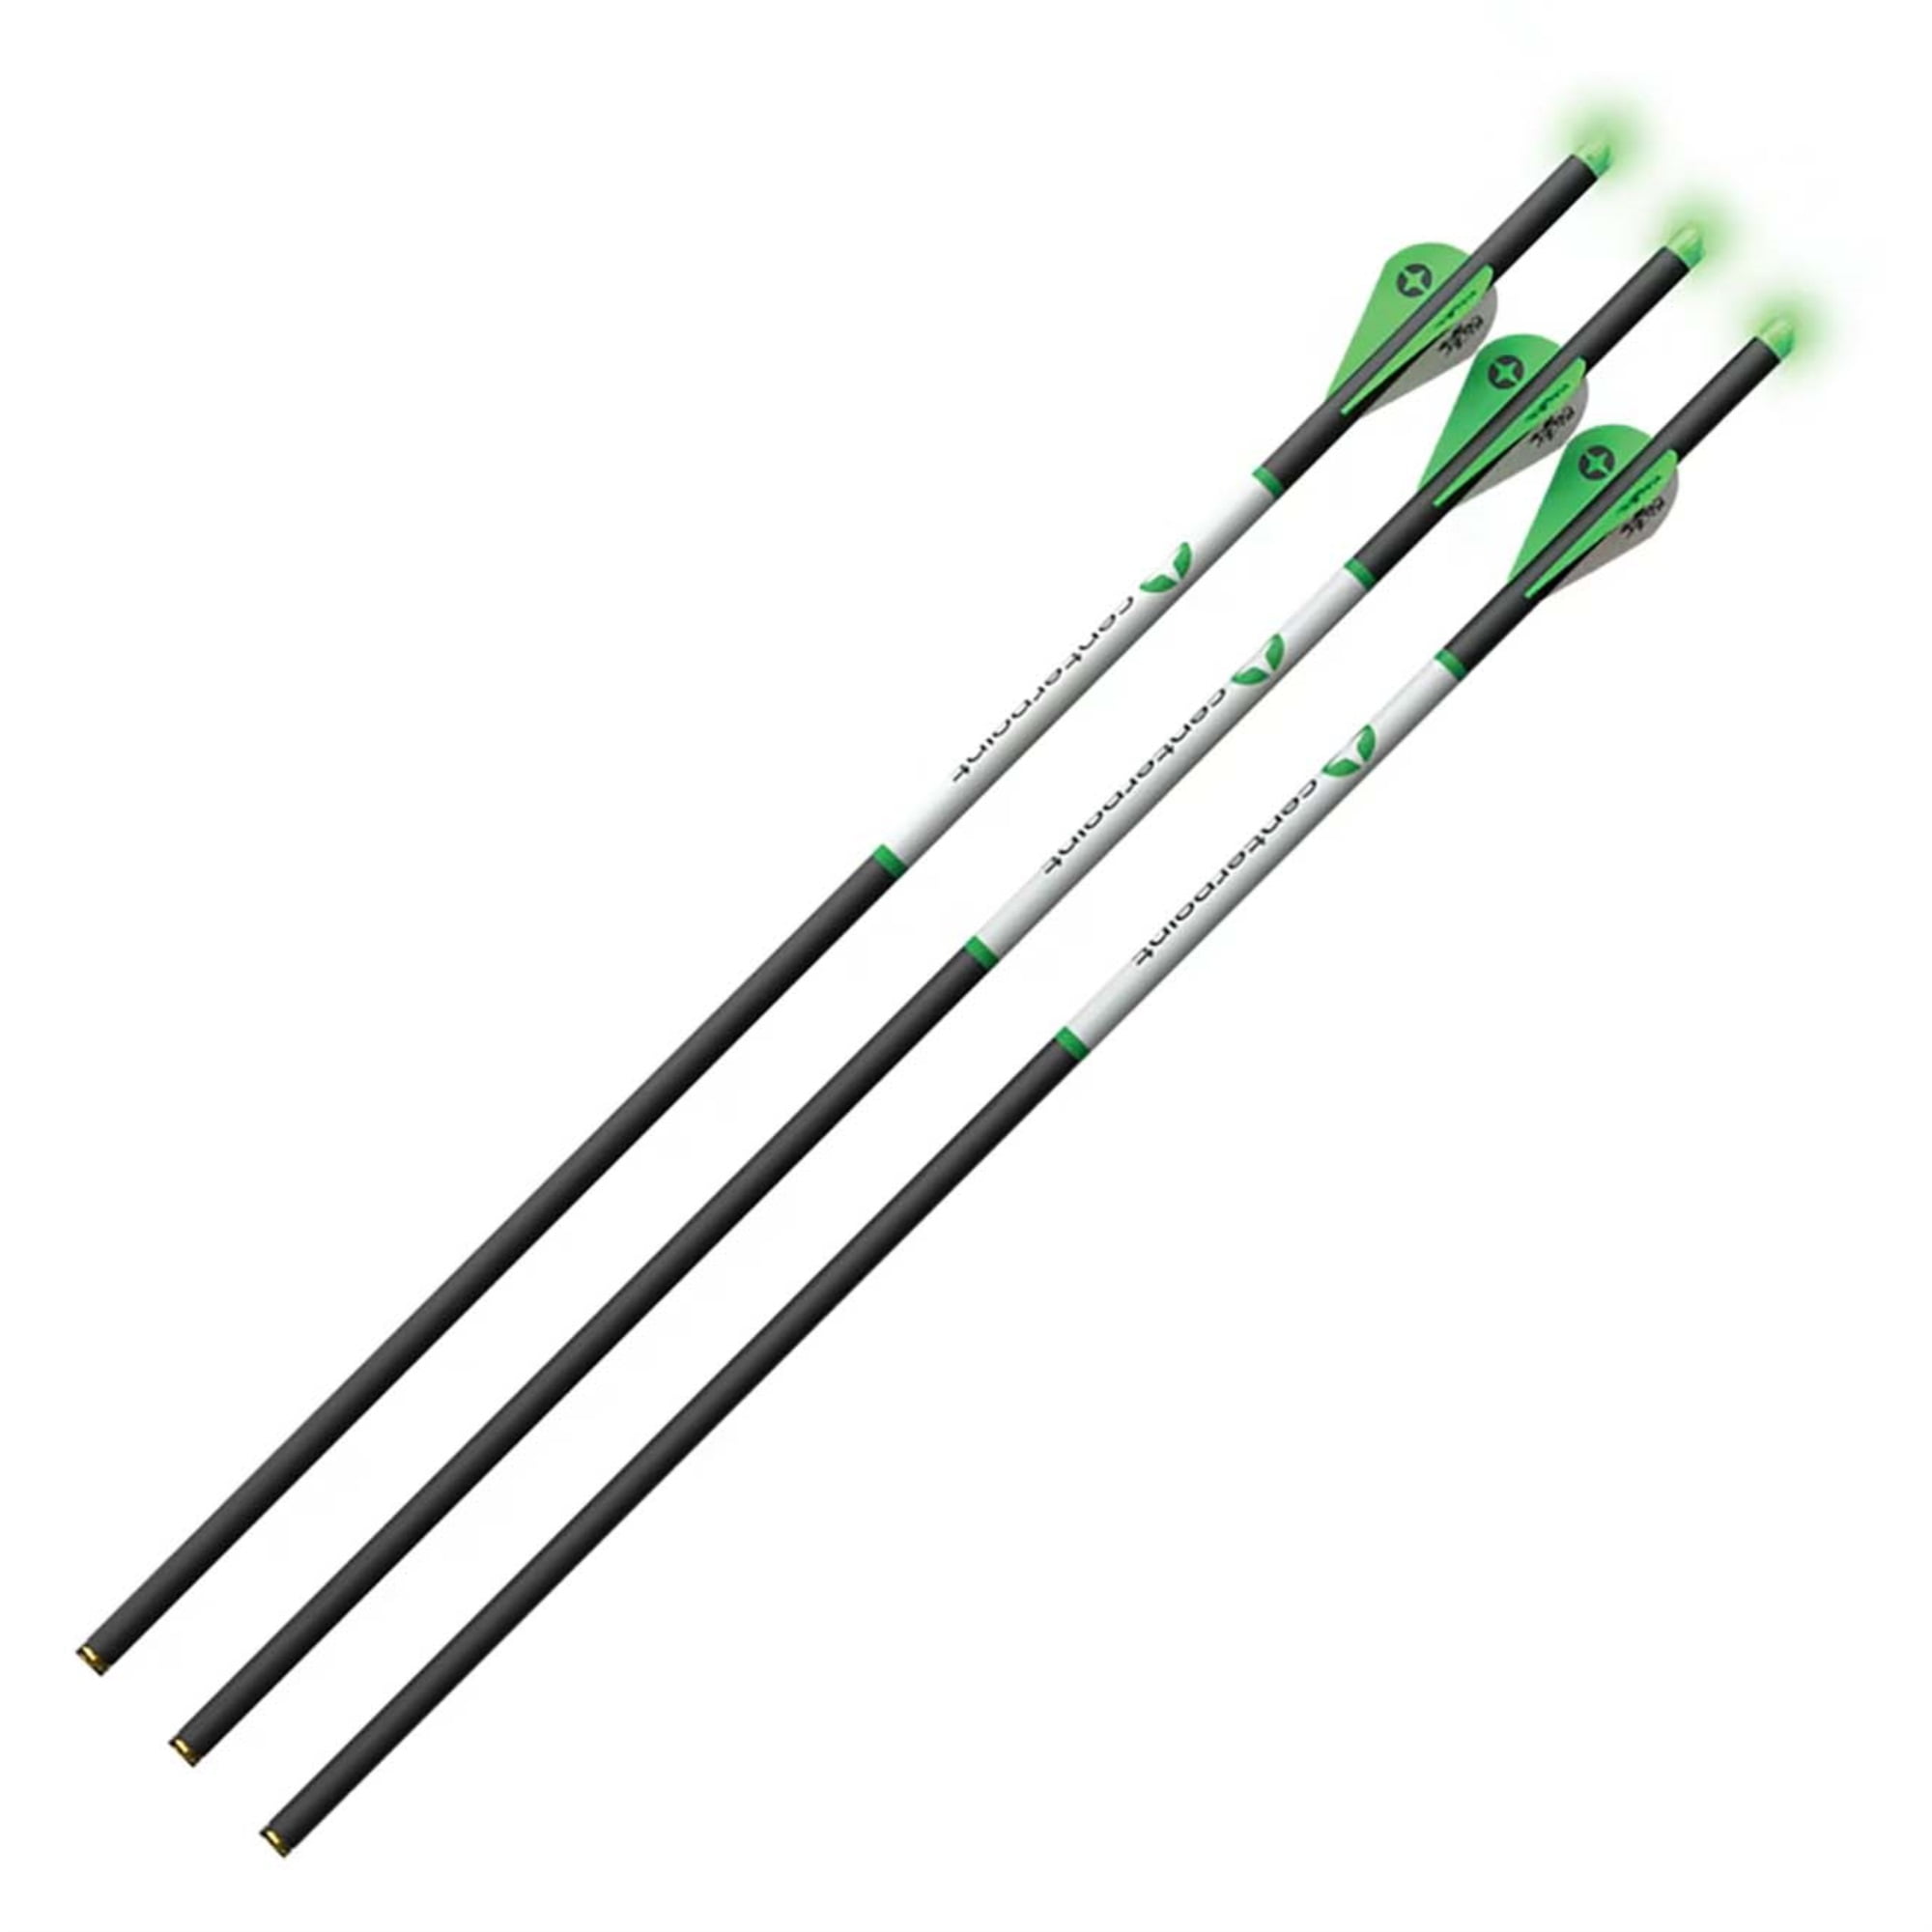 3Rivers Self Nock Wood Arrows, 3-pack